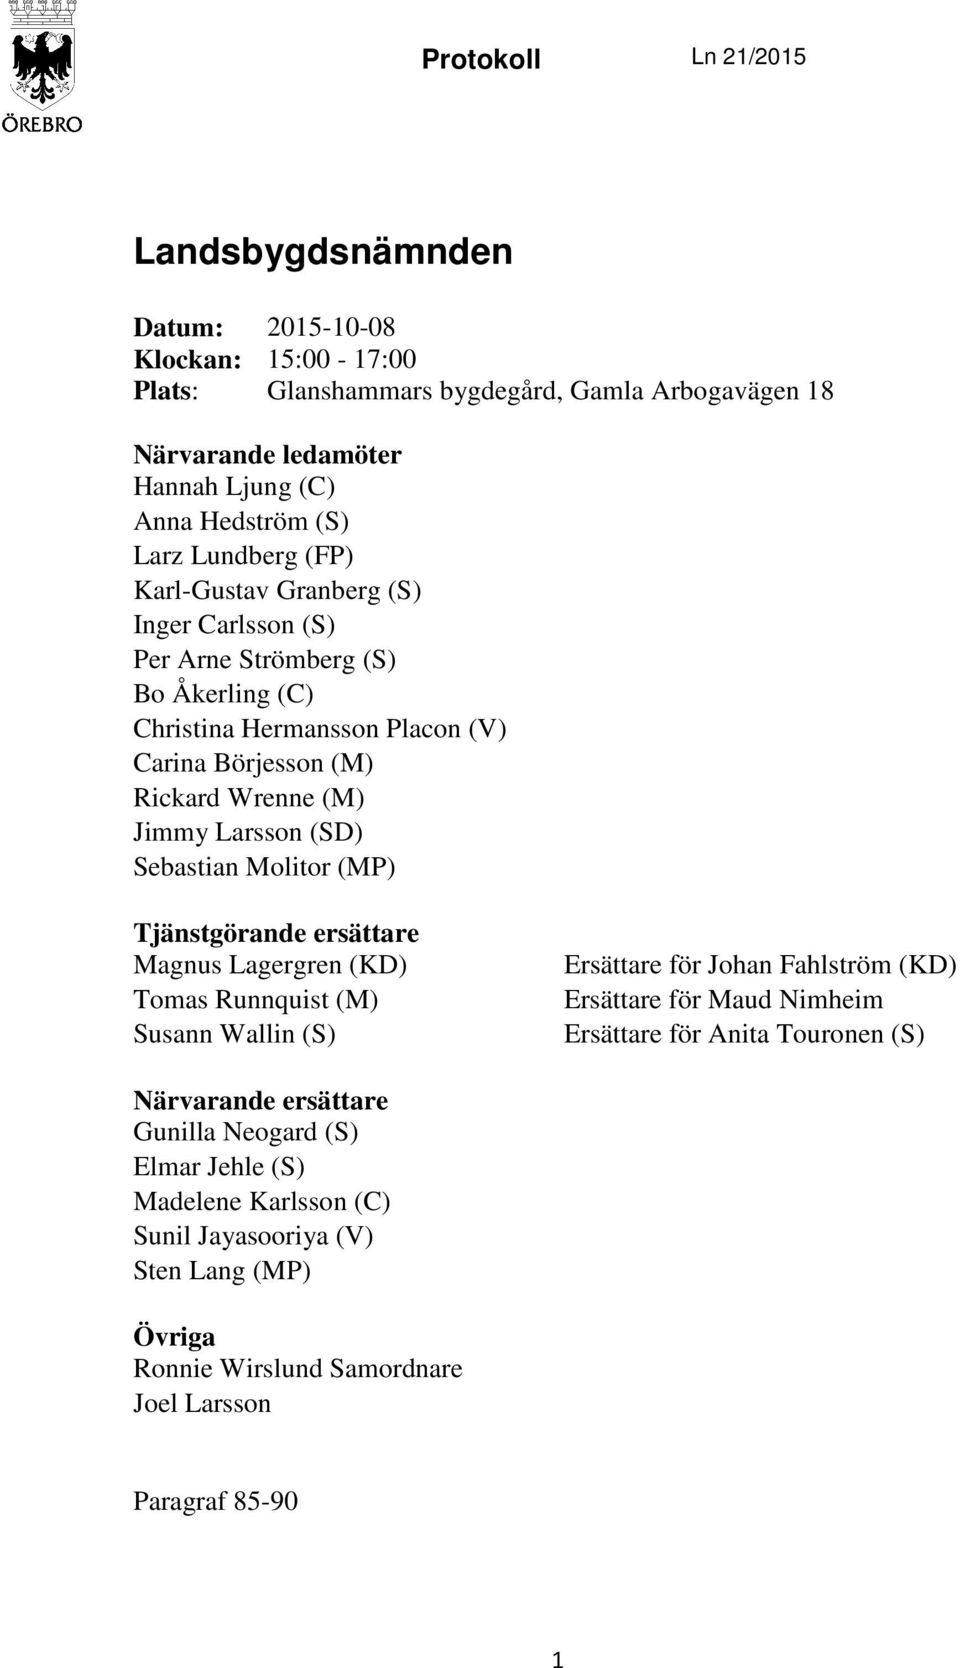 (SD) Sebastian Molitor (MP) Tjänstgörande ersättare Magnus Lagergren (KD) Tomas Runnquist (M) Susann Wallin (S) Ersättare för Johan Fahlström (KD) Ersättare för Maud Nimheim Ersättare för